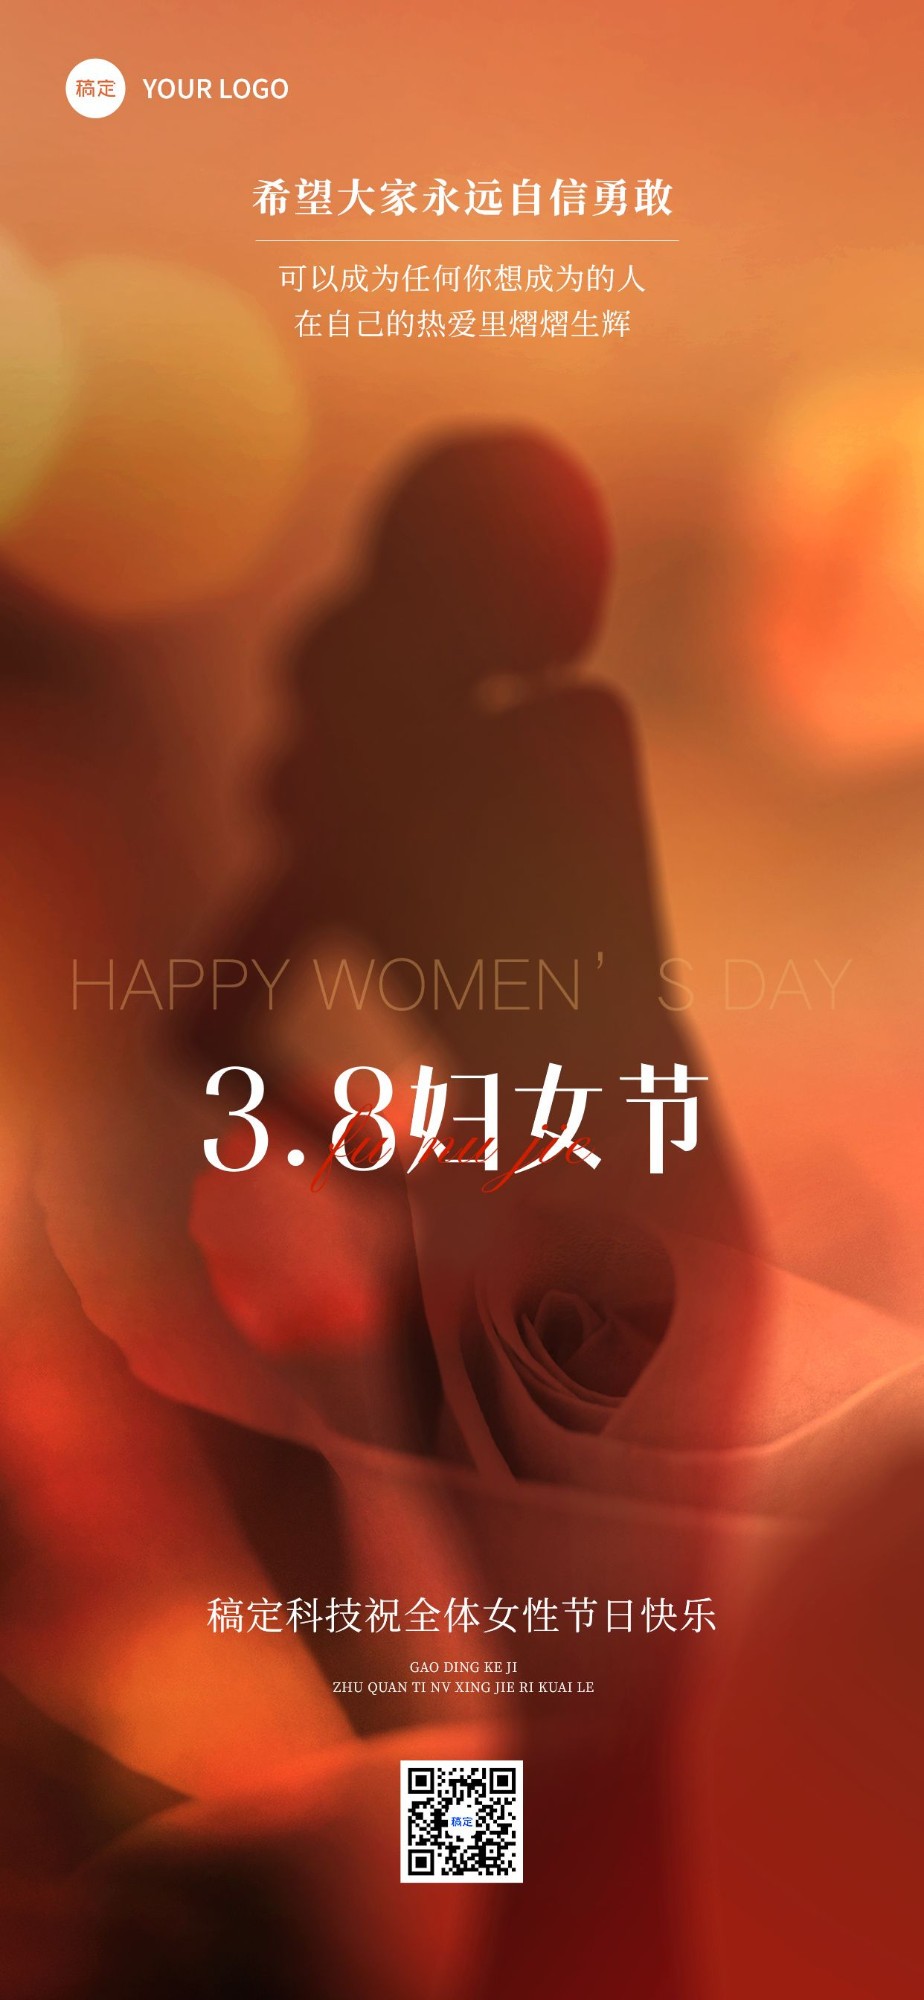 企业三八妇女节节日贺卡创意合成全屏竖版海报预览效果